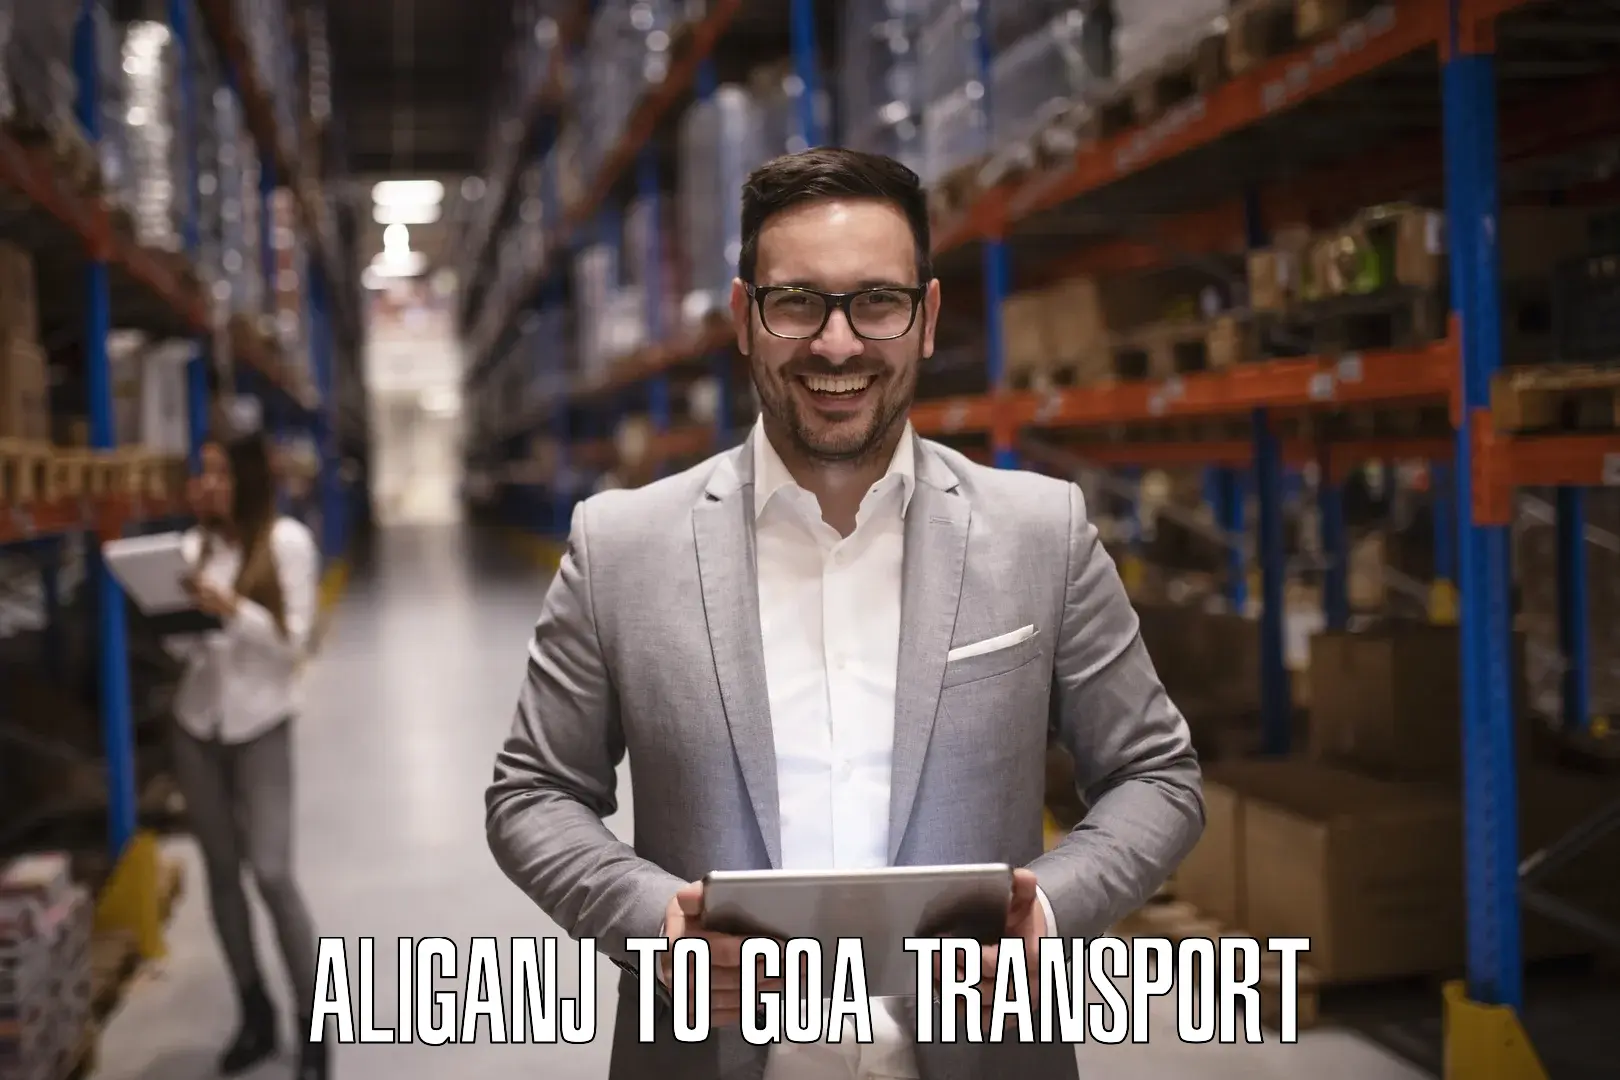 Door to door transport services Aliganj to Goa